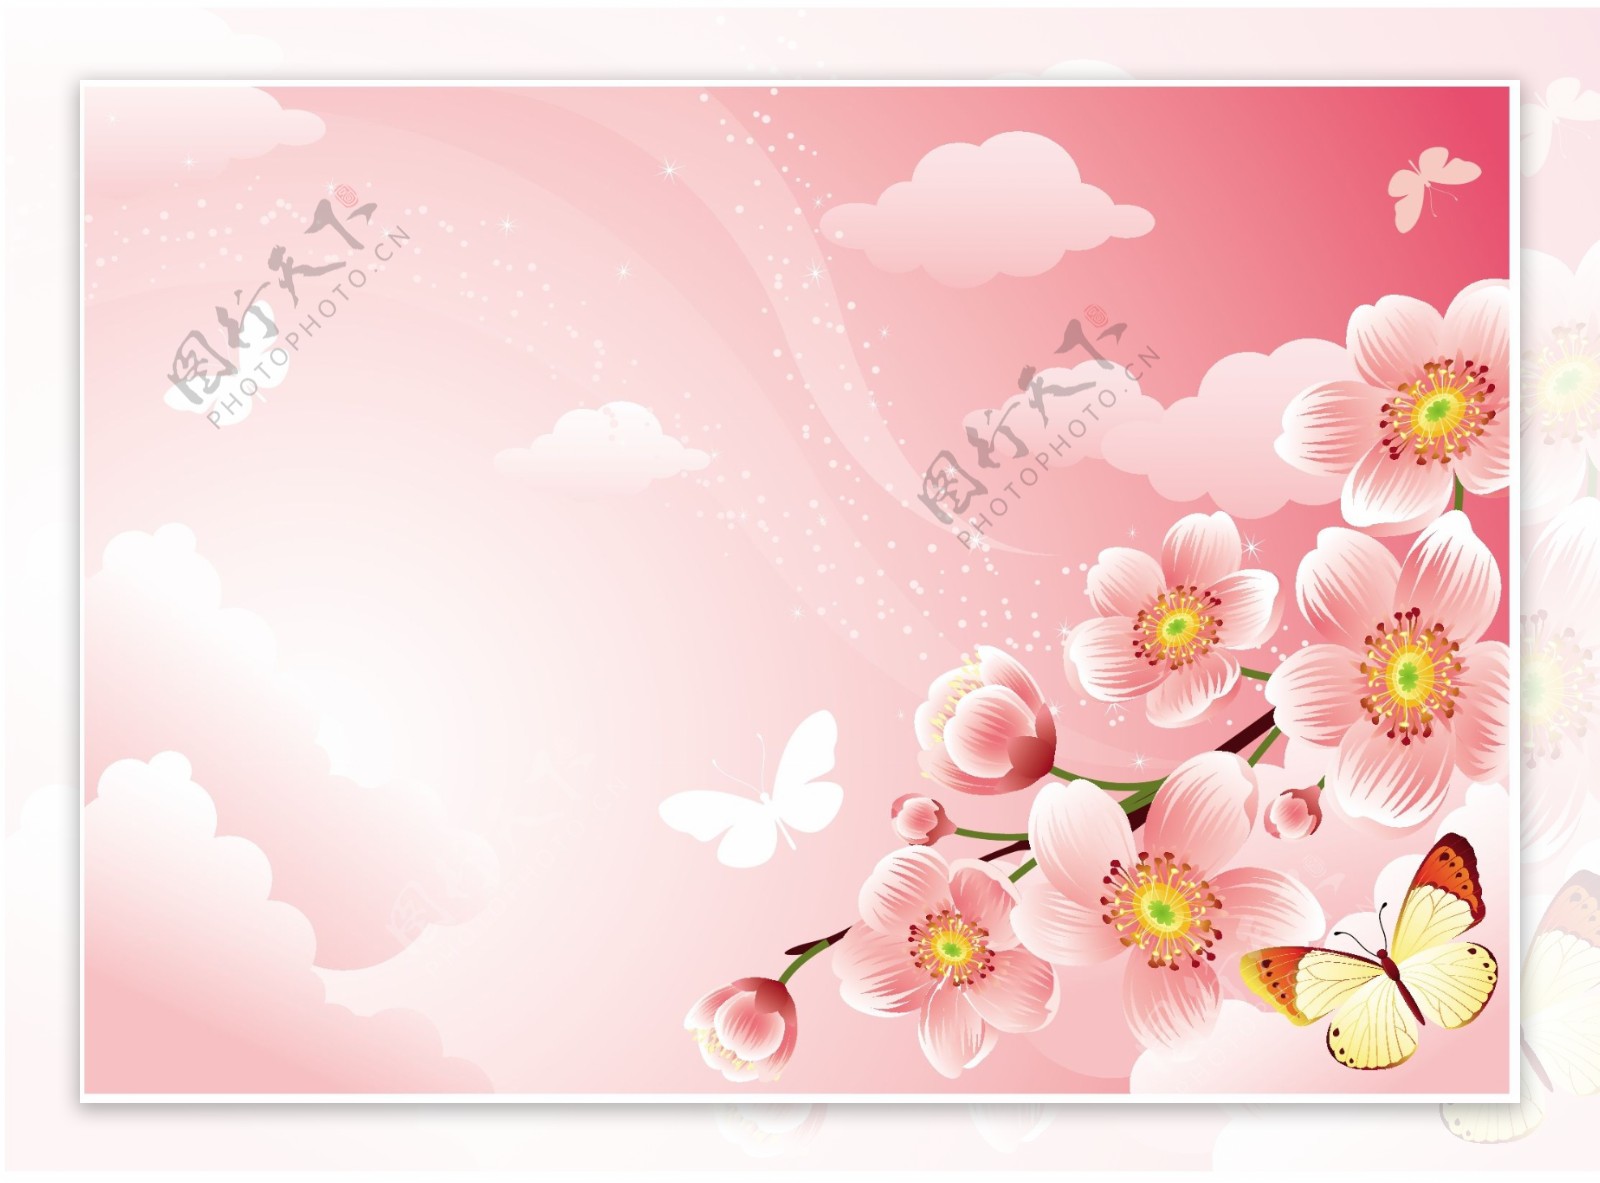 樱花背景素材图片